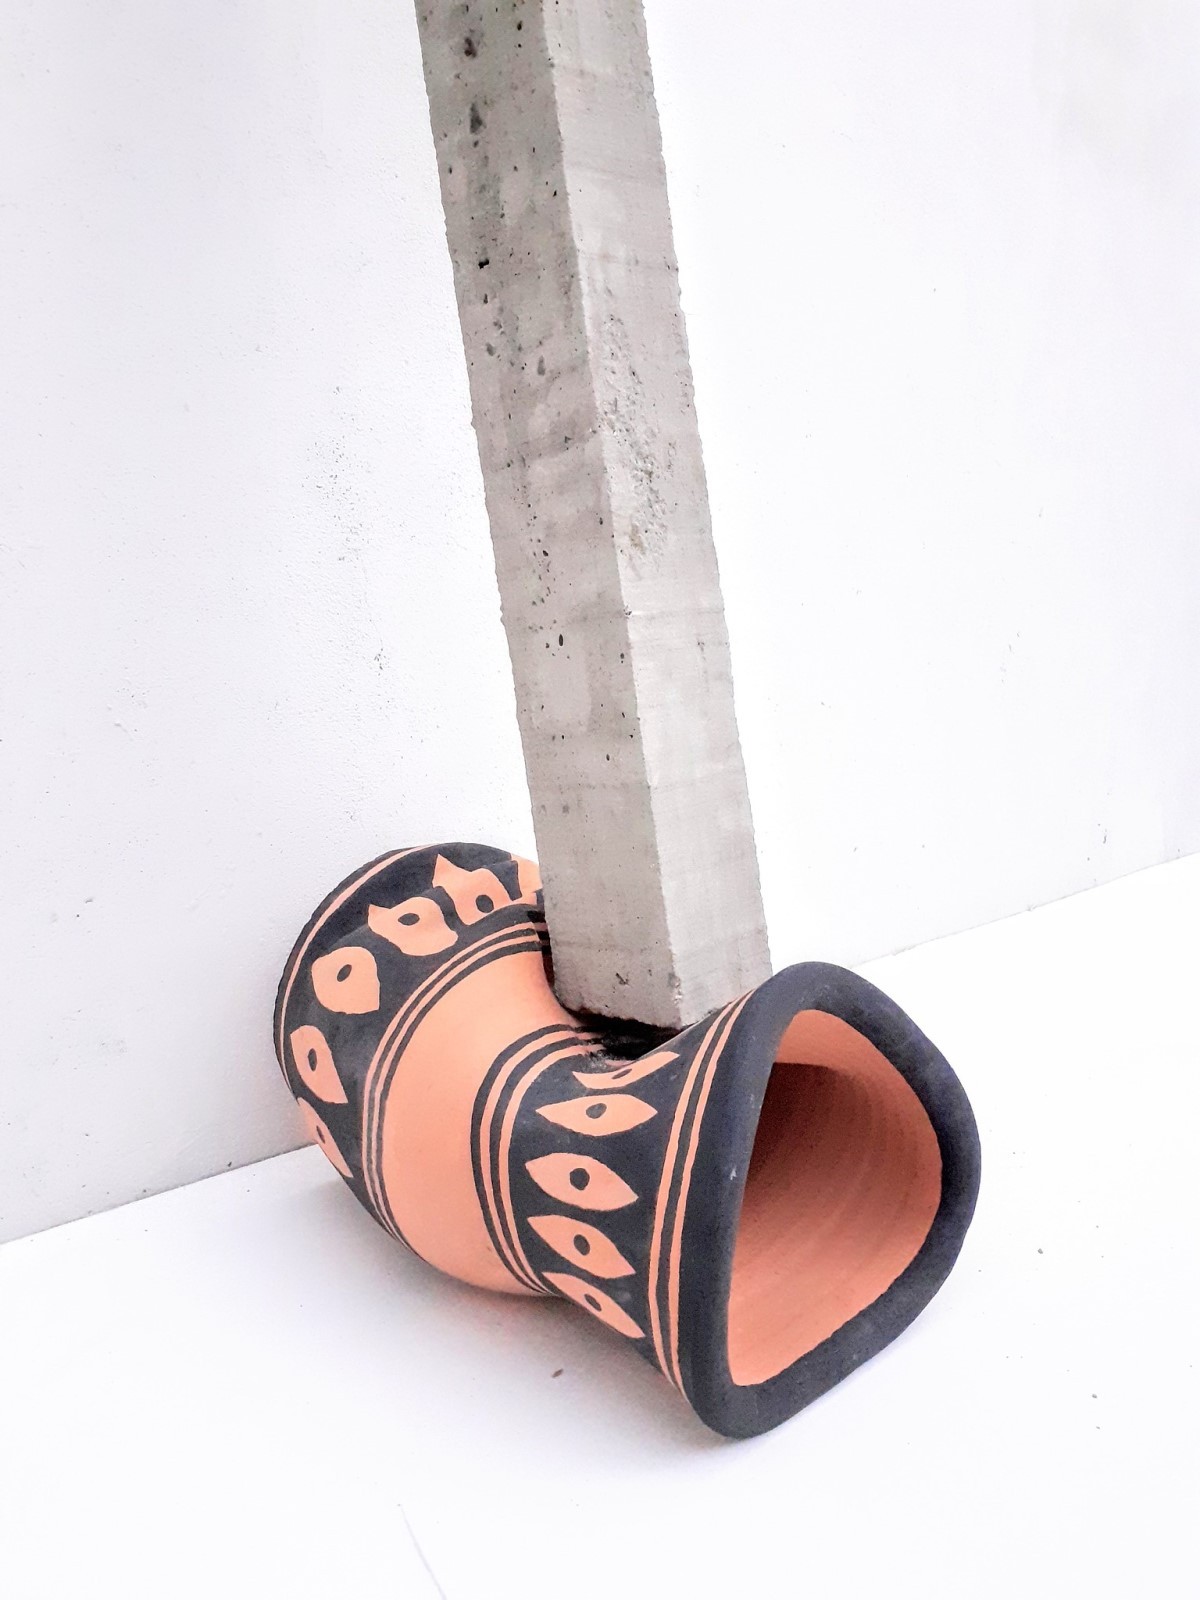 Artista explora concreto, cerâmica, saco de cimento, jenipapo, carvão e livros em suas artes (Foto: Andrey Guaianá Zignnatto / Divulgação )